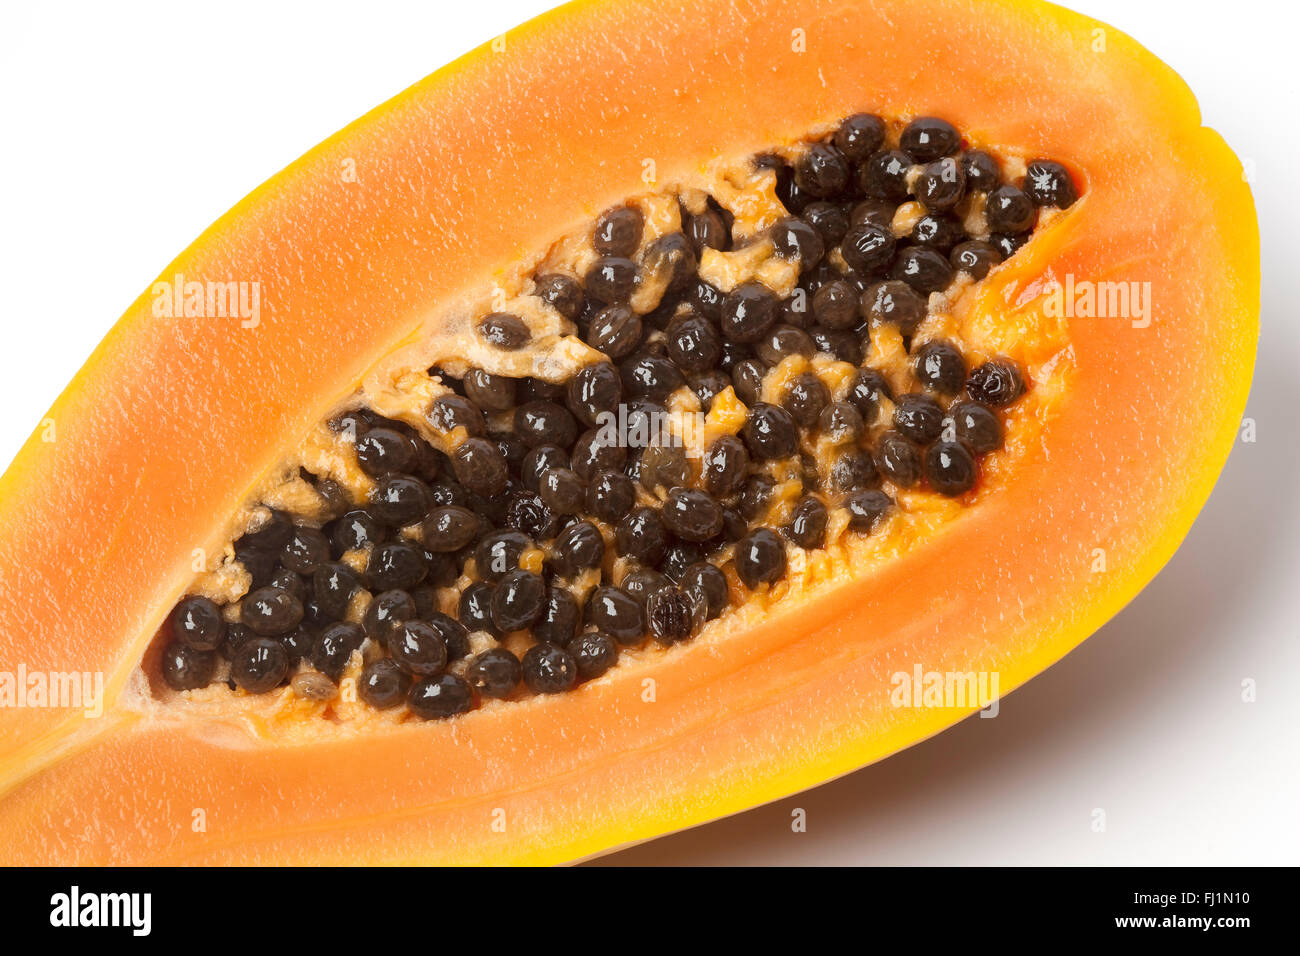 Près de la moitié de papaye sur fond blanc Banque D'Images